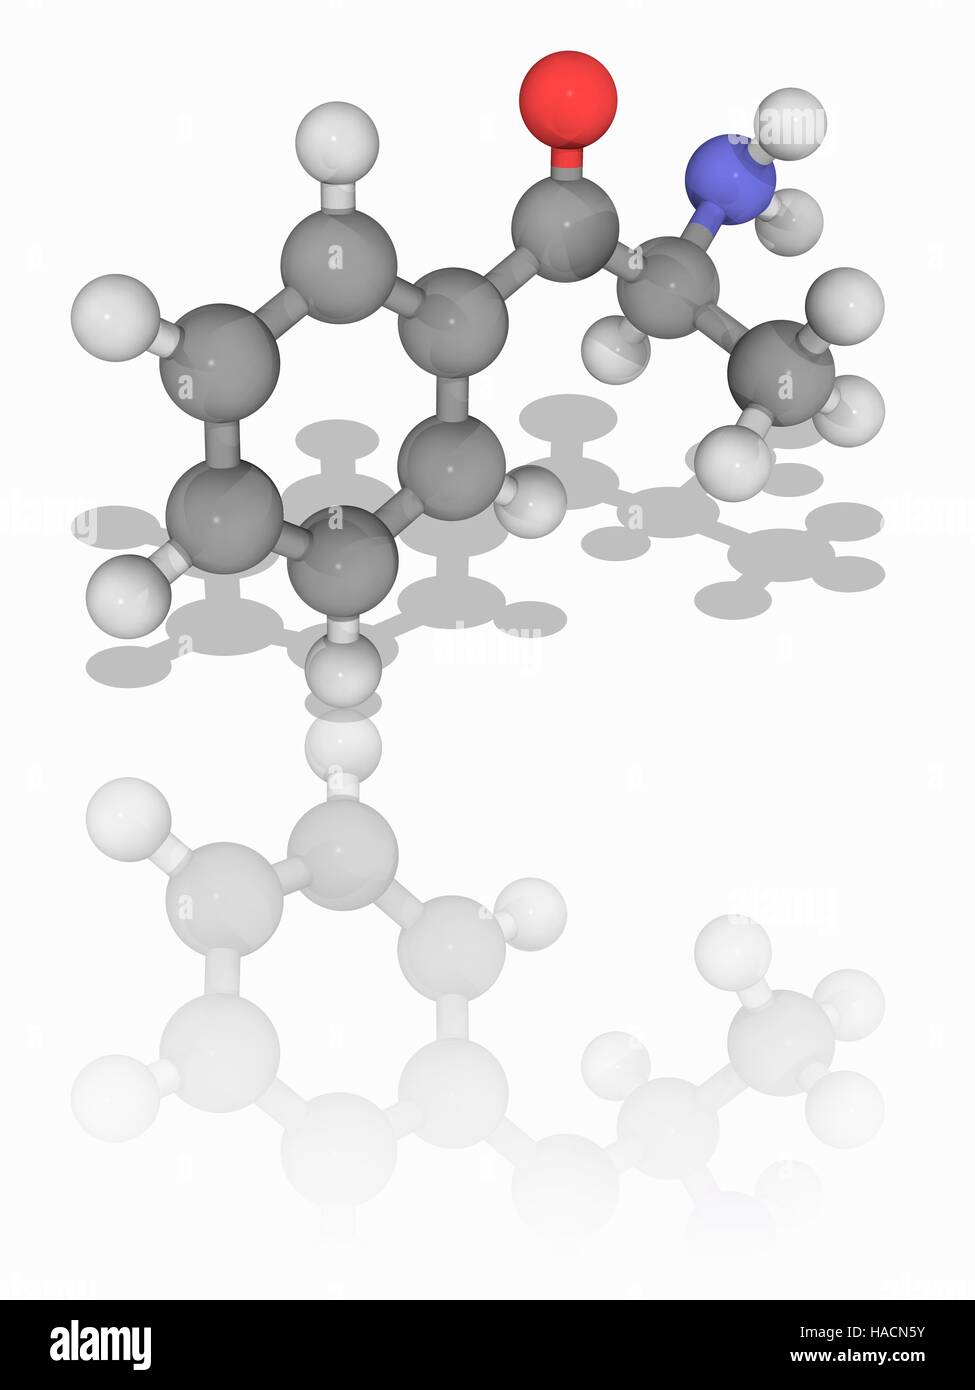 Cathinone. Il modello molecolare del farmaco cathinone (C9.H11.N.O), che si trovano in un arbusto Catha edulis. Noto come KHAT, le foglie di questa pianta sono tradizionalmente masticati per il loro effetto stimolante. Questo è dovuto alla cathinone, che è un vetro-come la monoammina alcaloide. Gli atomi sono rappresentati da sfere e sono codificati a colori: carbonio (grigio), Idrogeno (bianco) e ossigeno (rosso). Illustrazione. Foto Stock